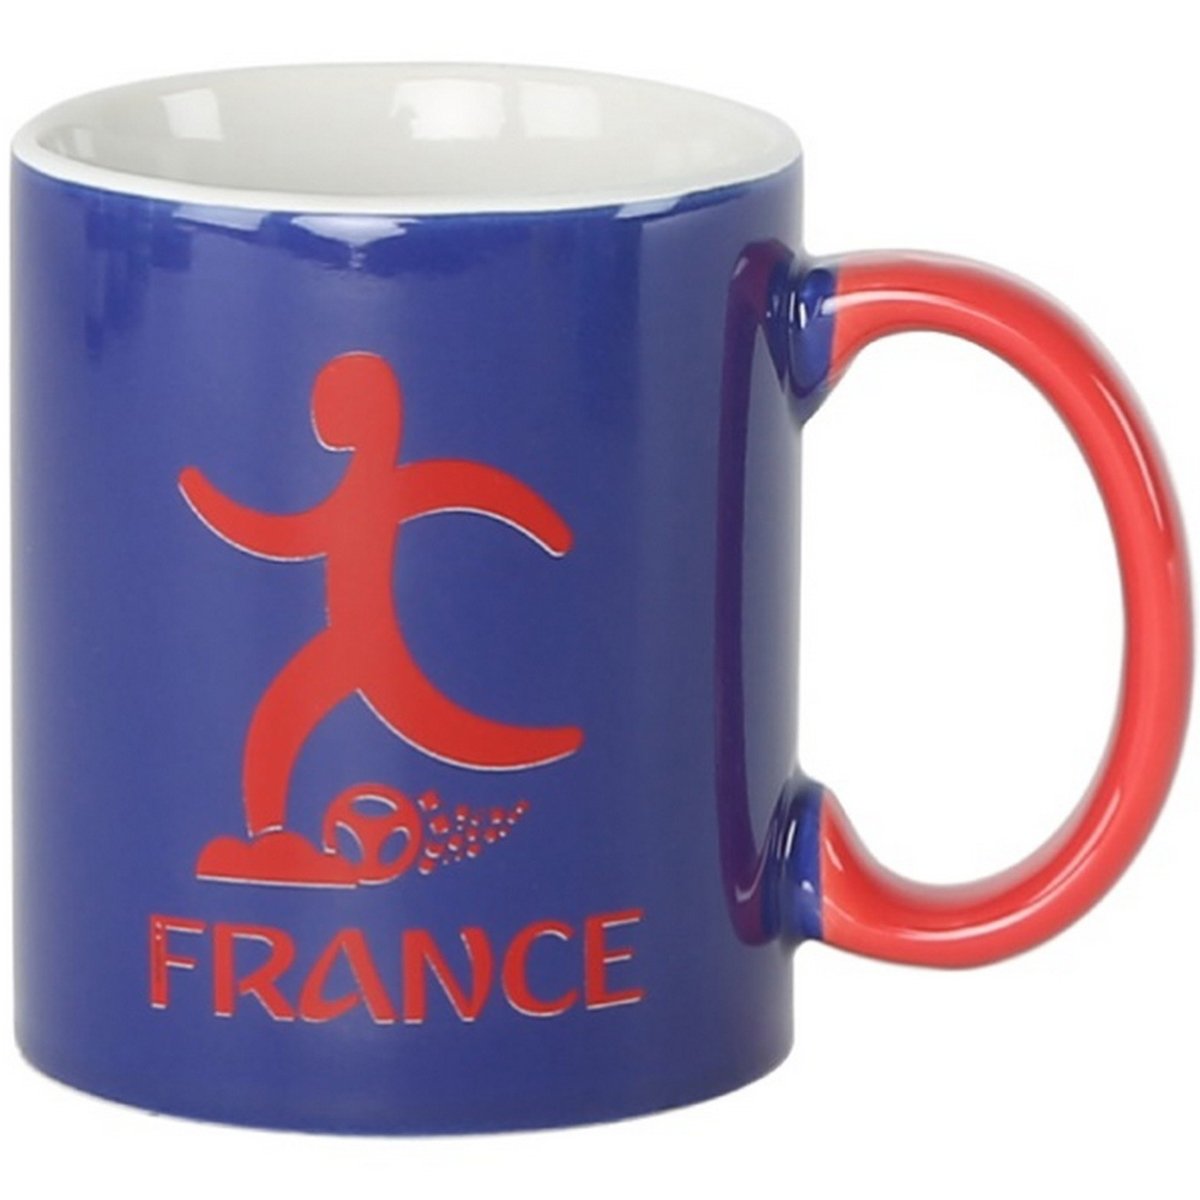 Fifa Ceramic Mug France